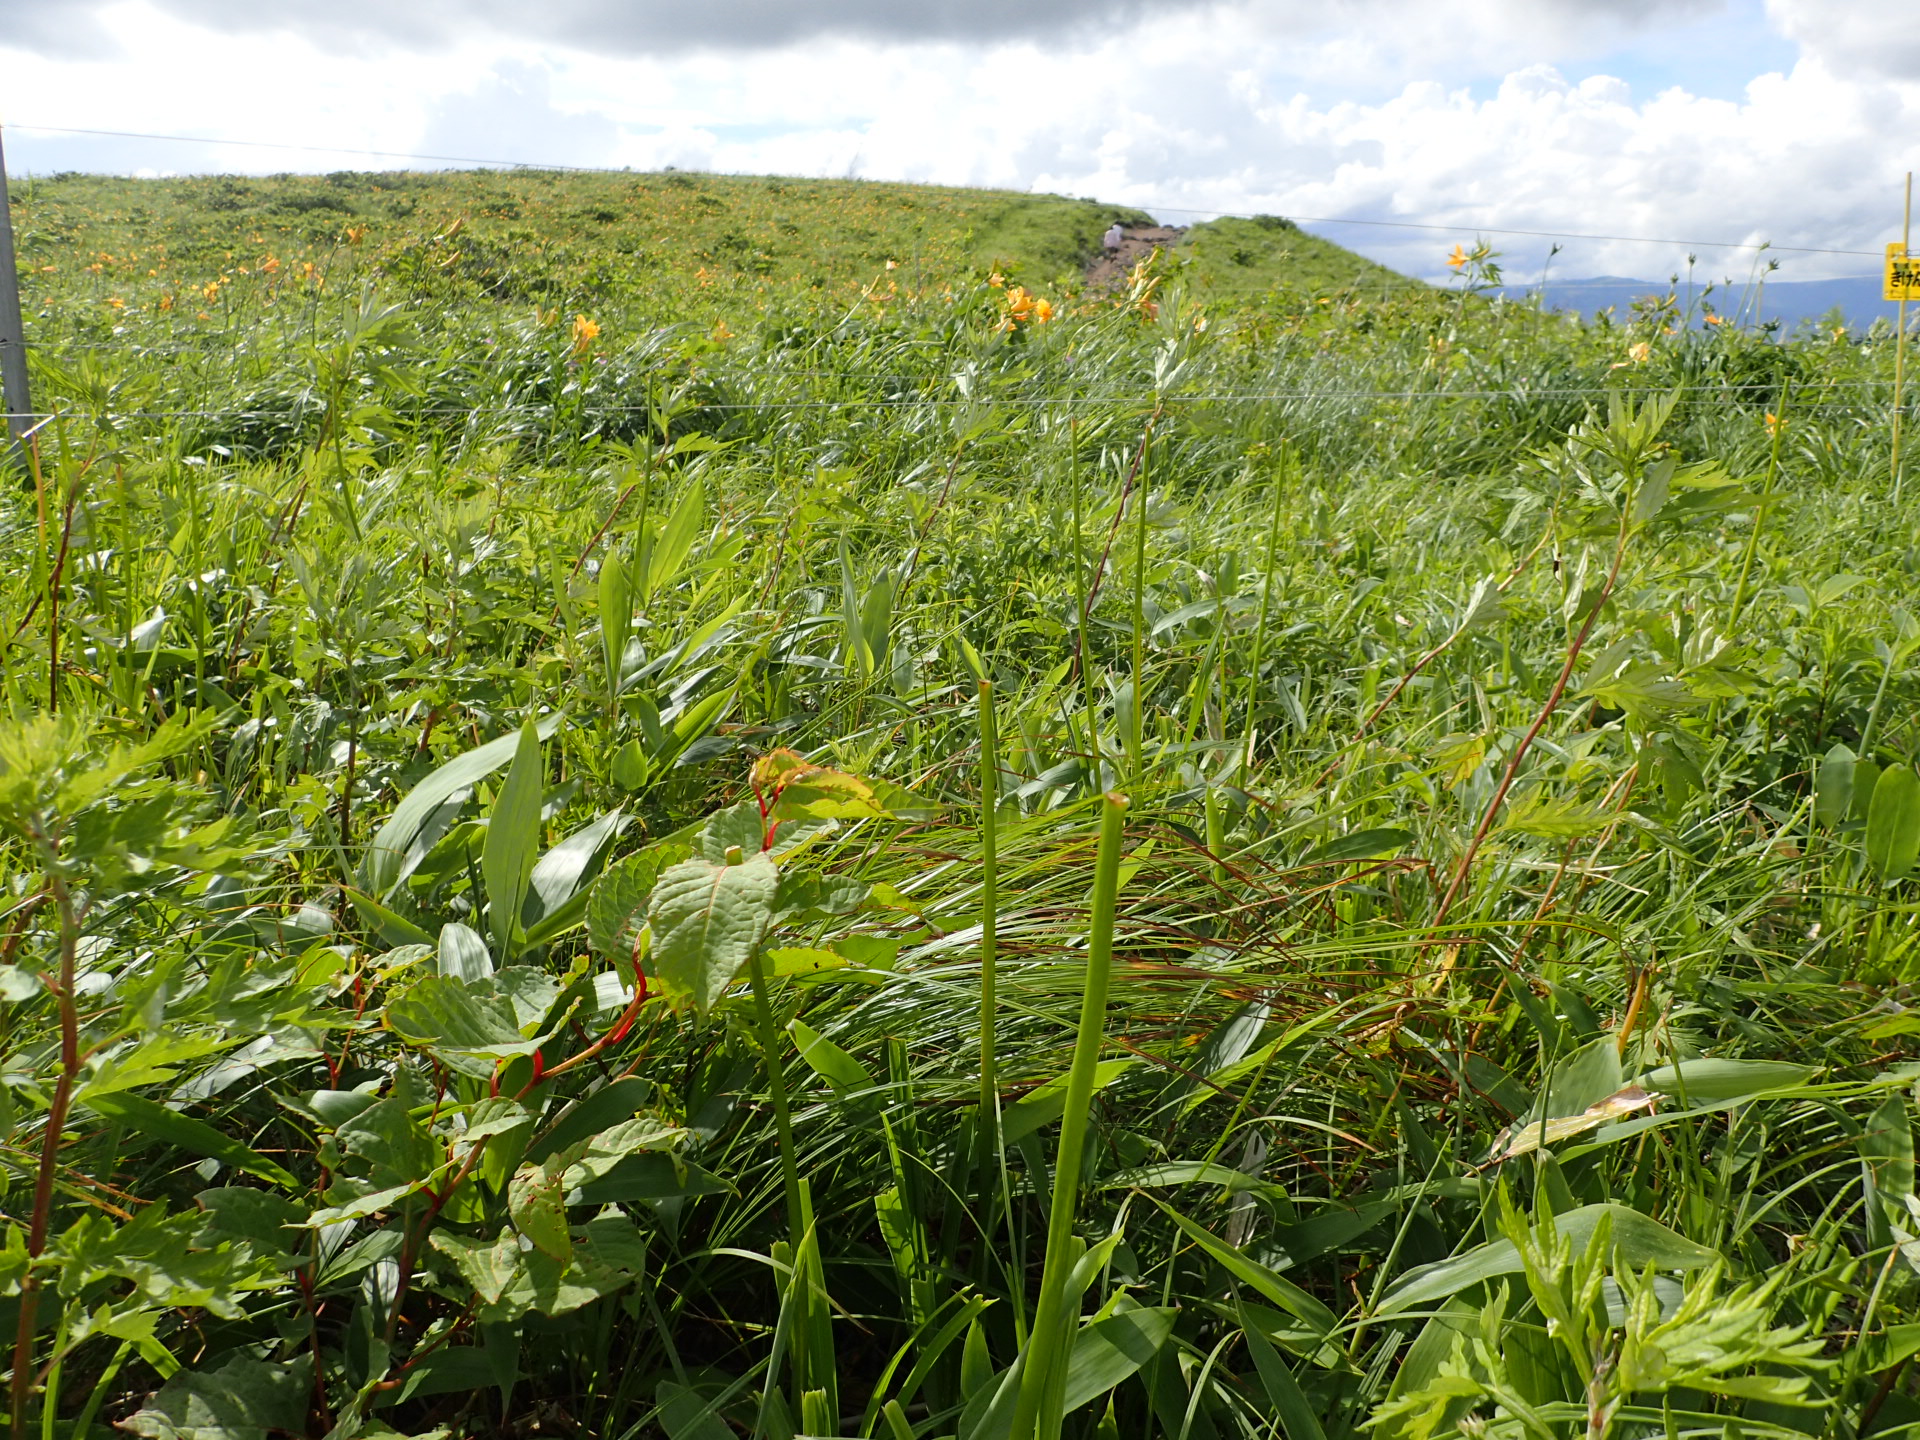 霧ヶ峰高原でニホンジカ食害対策のための忌避剤散布試験を実施しています 自然と遊ぼう ネイチャーツアー